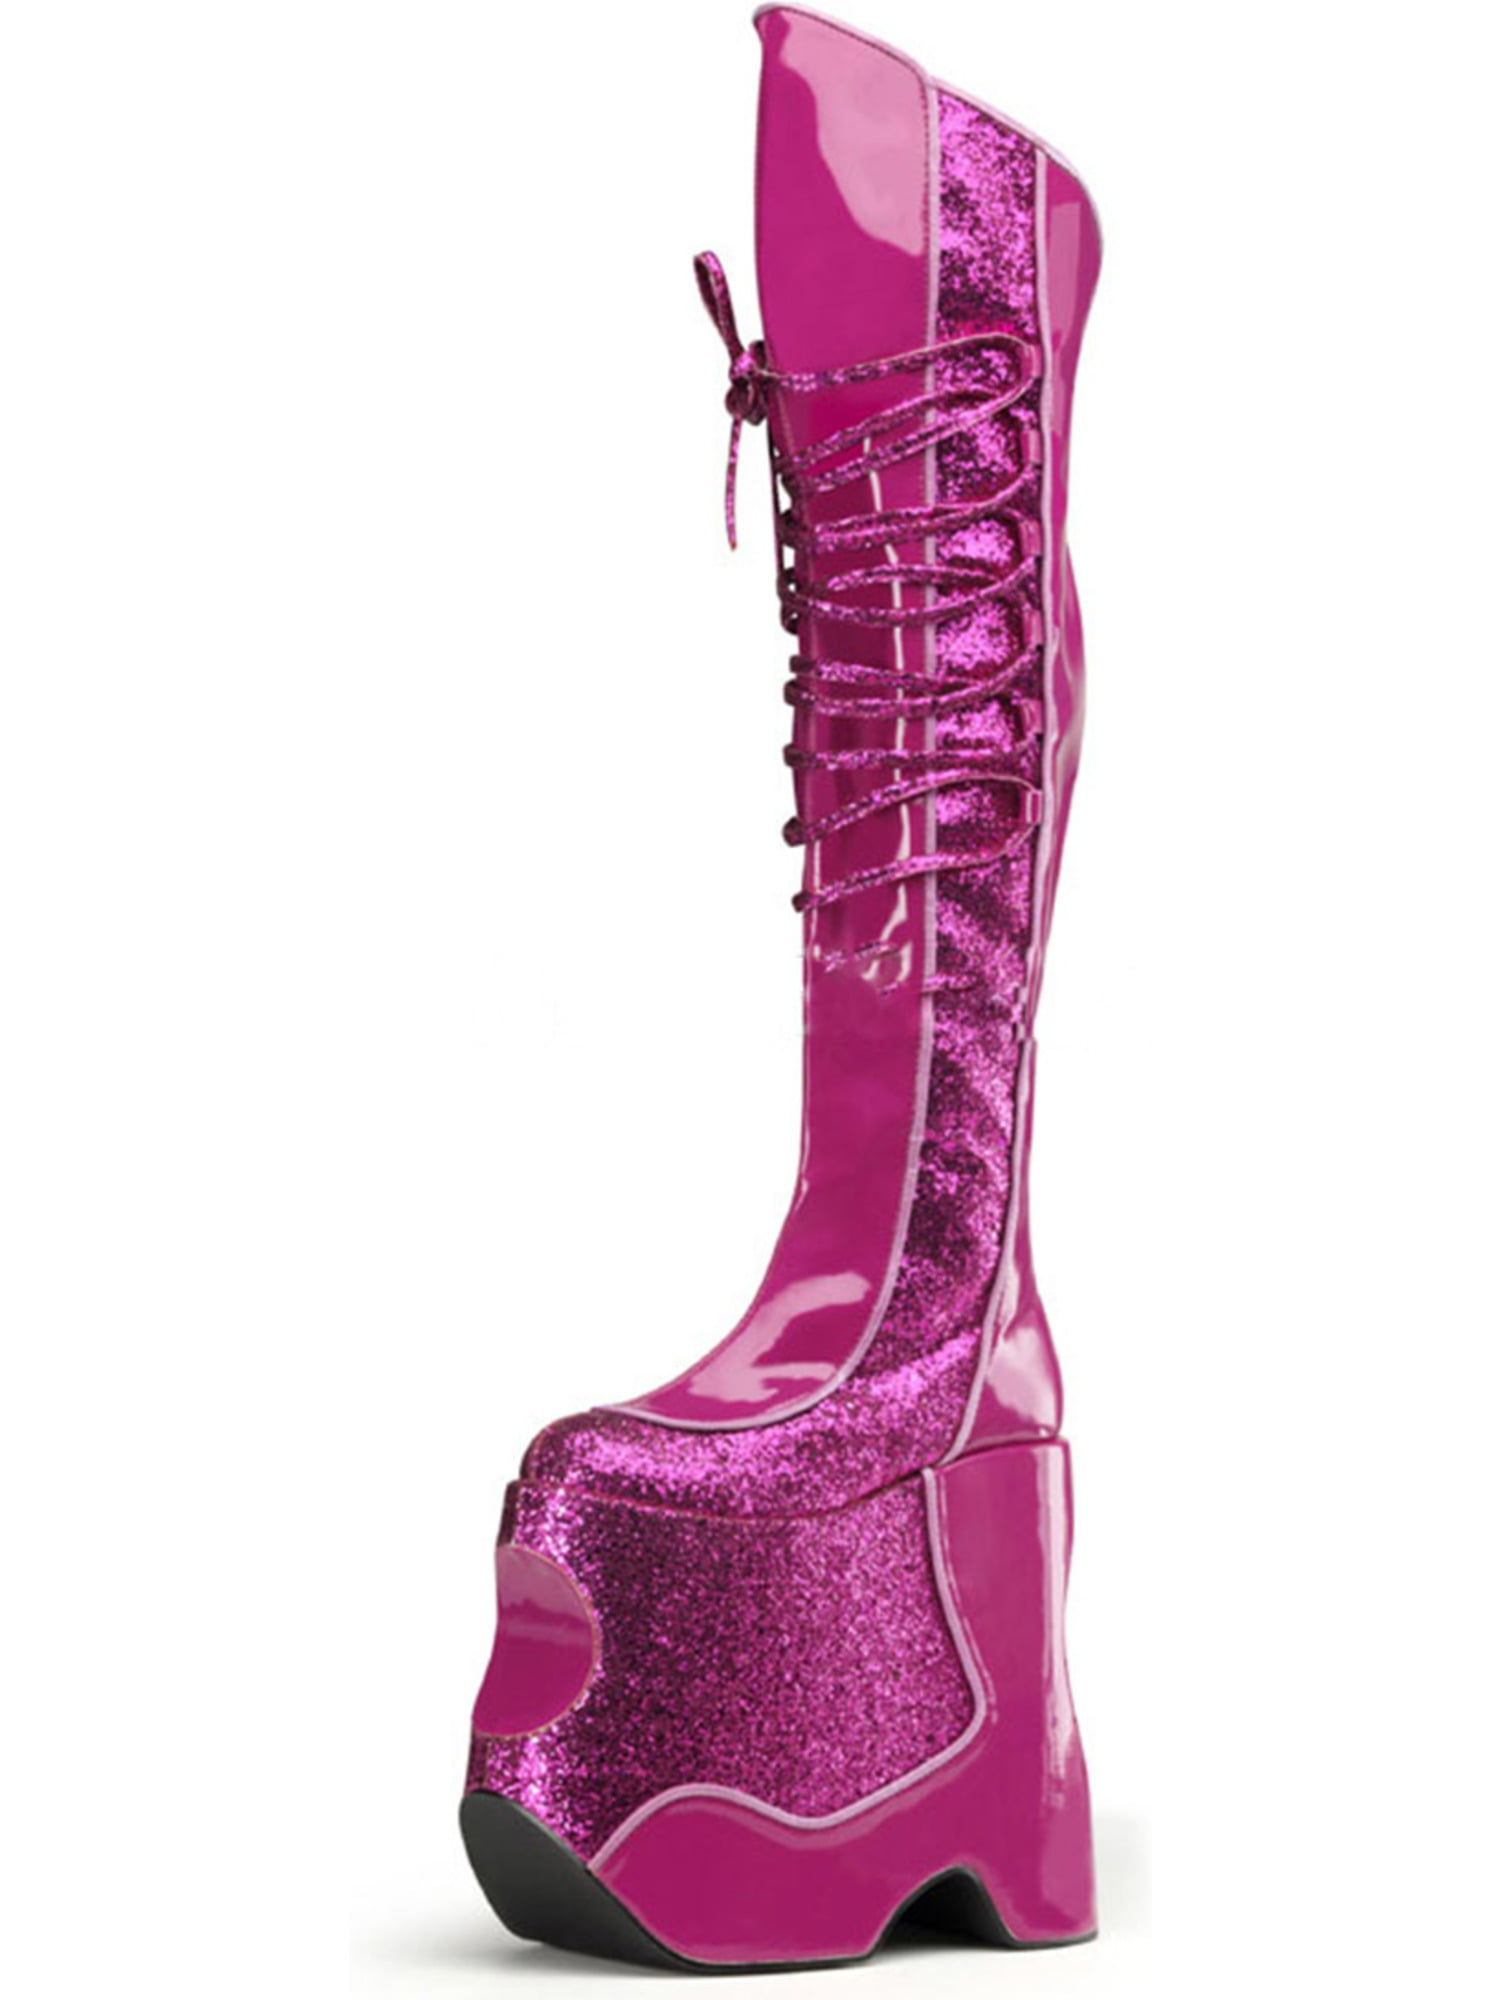 thigh high hot pink boots